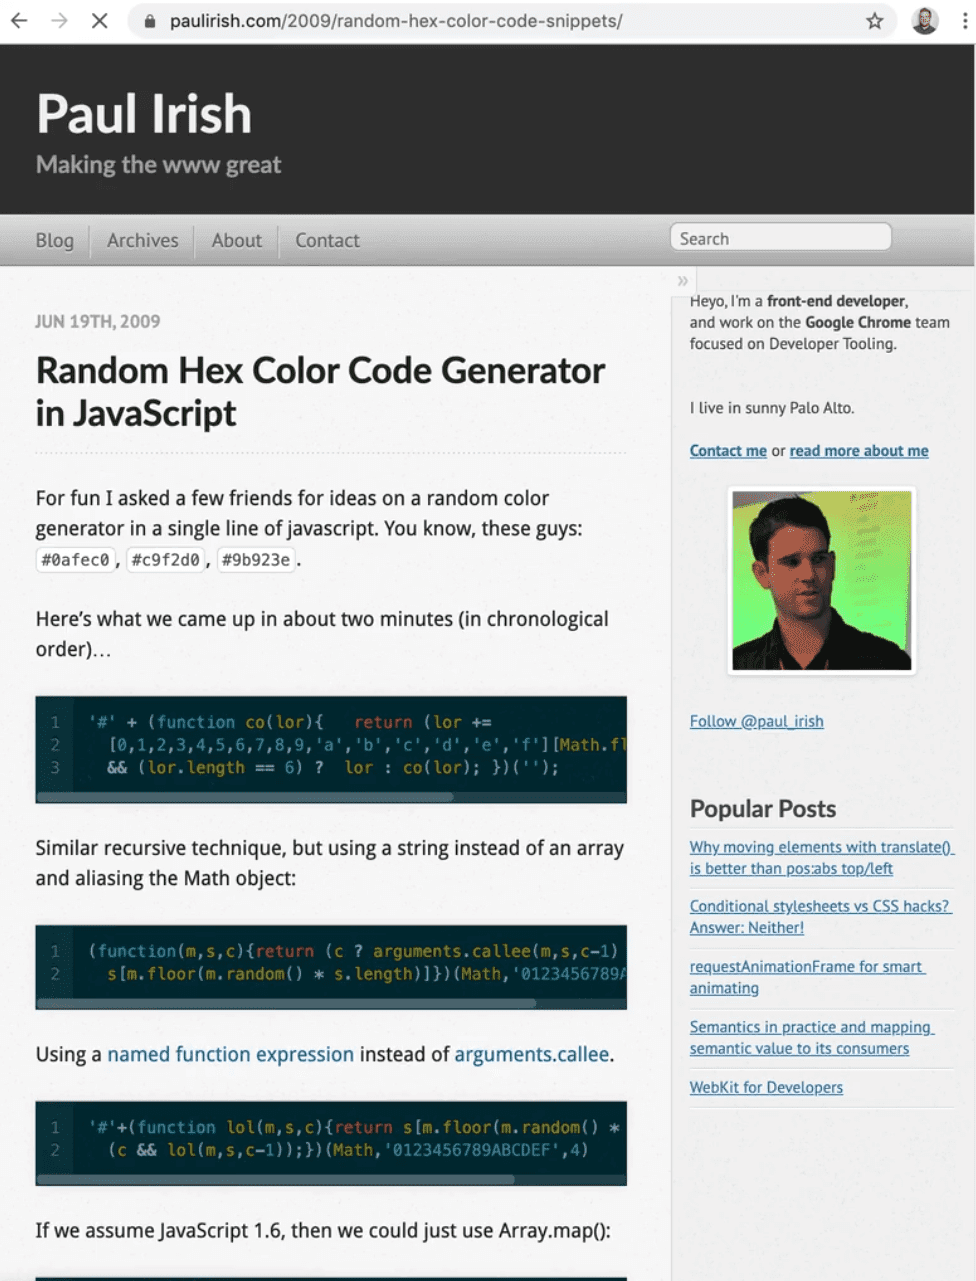 documentation describing generating random hex color code in javascript